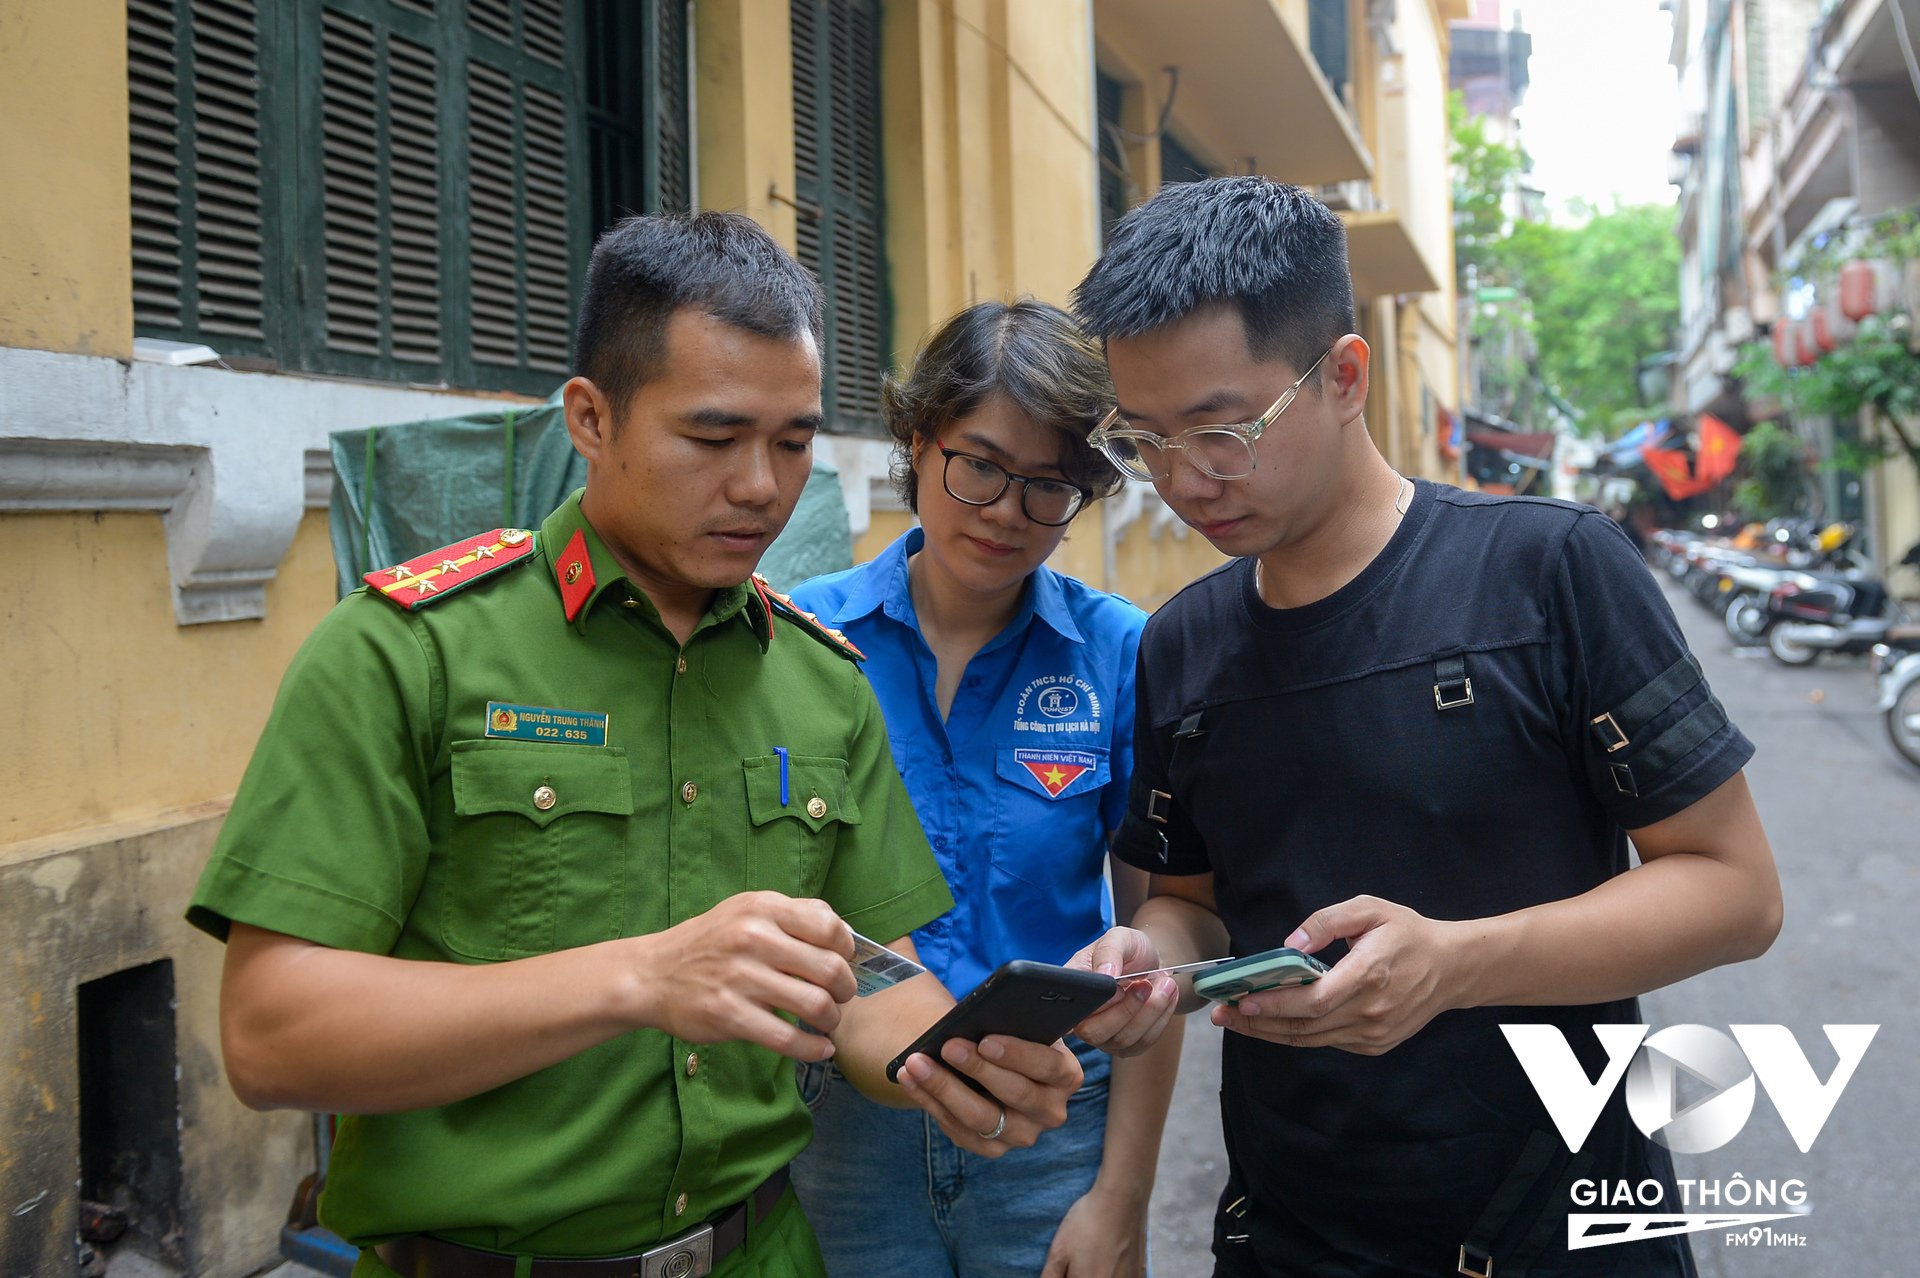 Đoàn viên thanh niên và lực lượng cảnh sát khu vực đến từng ngõ nhỏ trong phố cổ để hỗ trợ người dân.